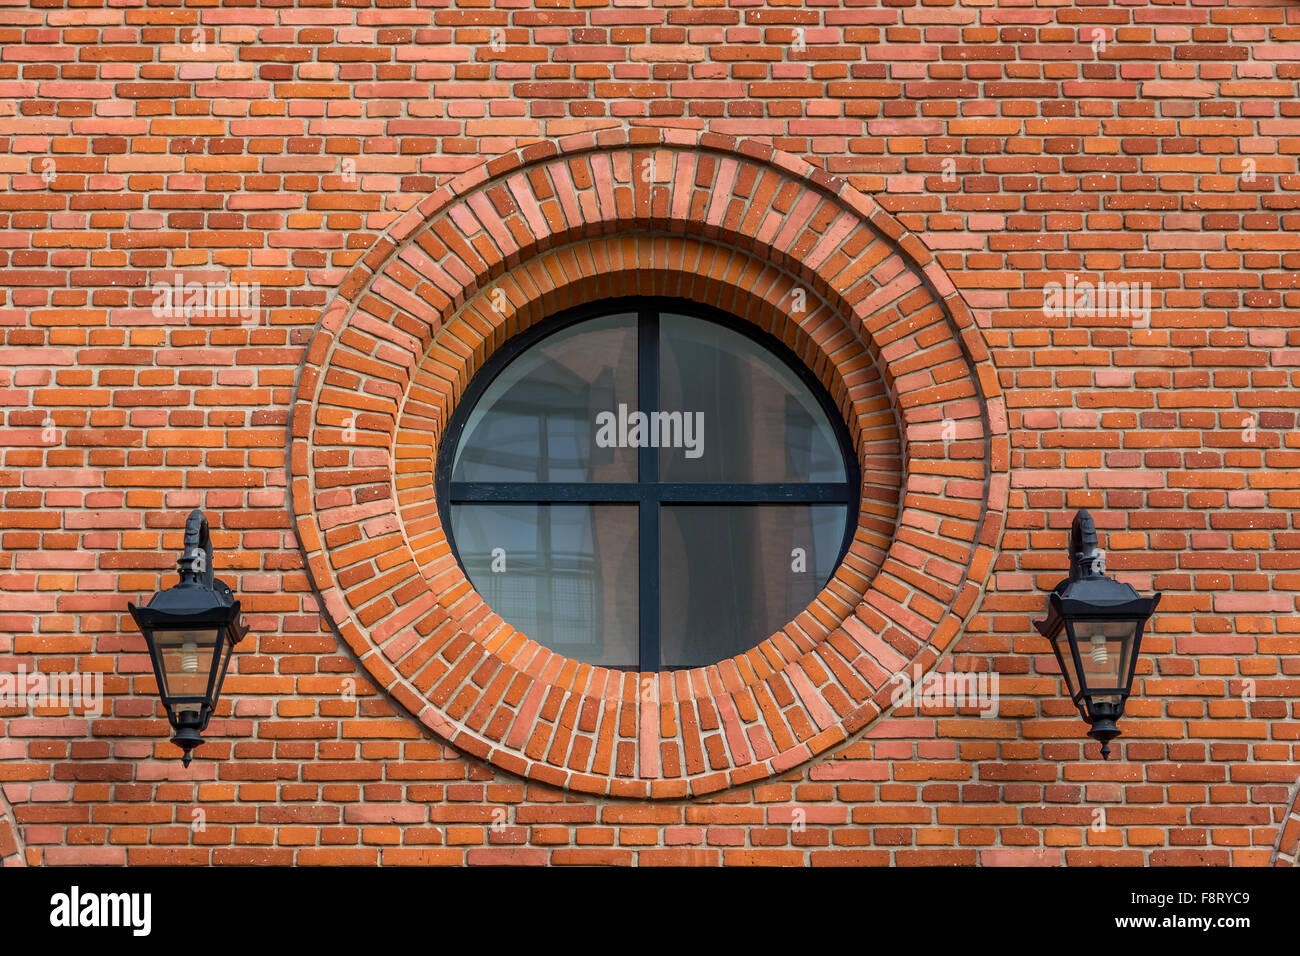 Magnifiquement rénové de mur d'une ancienne usine de textile avec fenêtre ronde et deux lanternes Banque D'Images